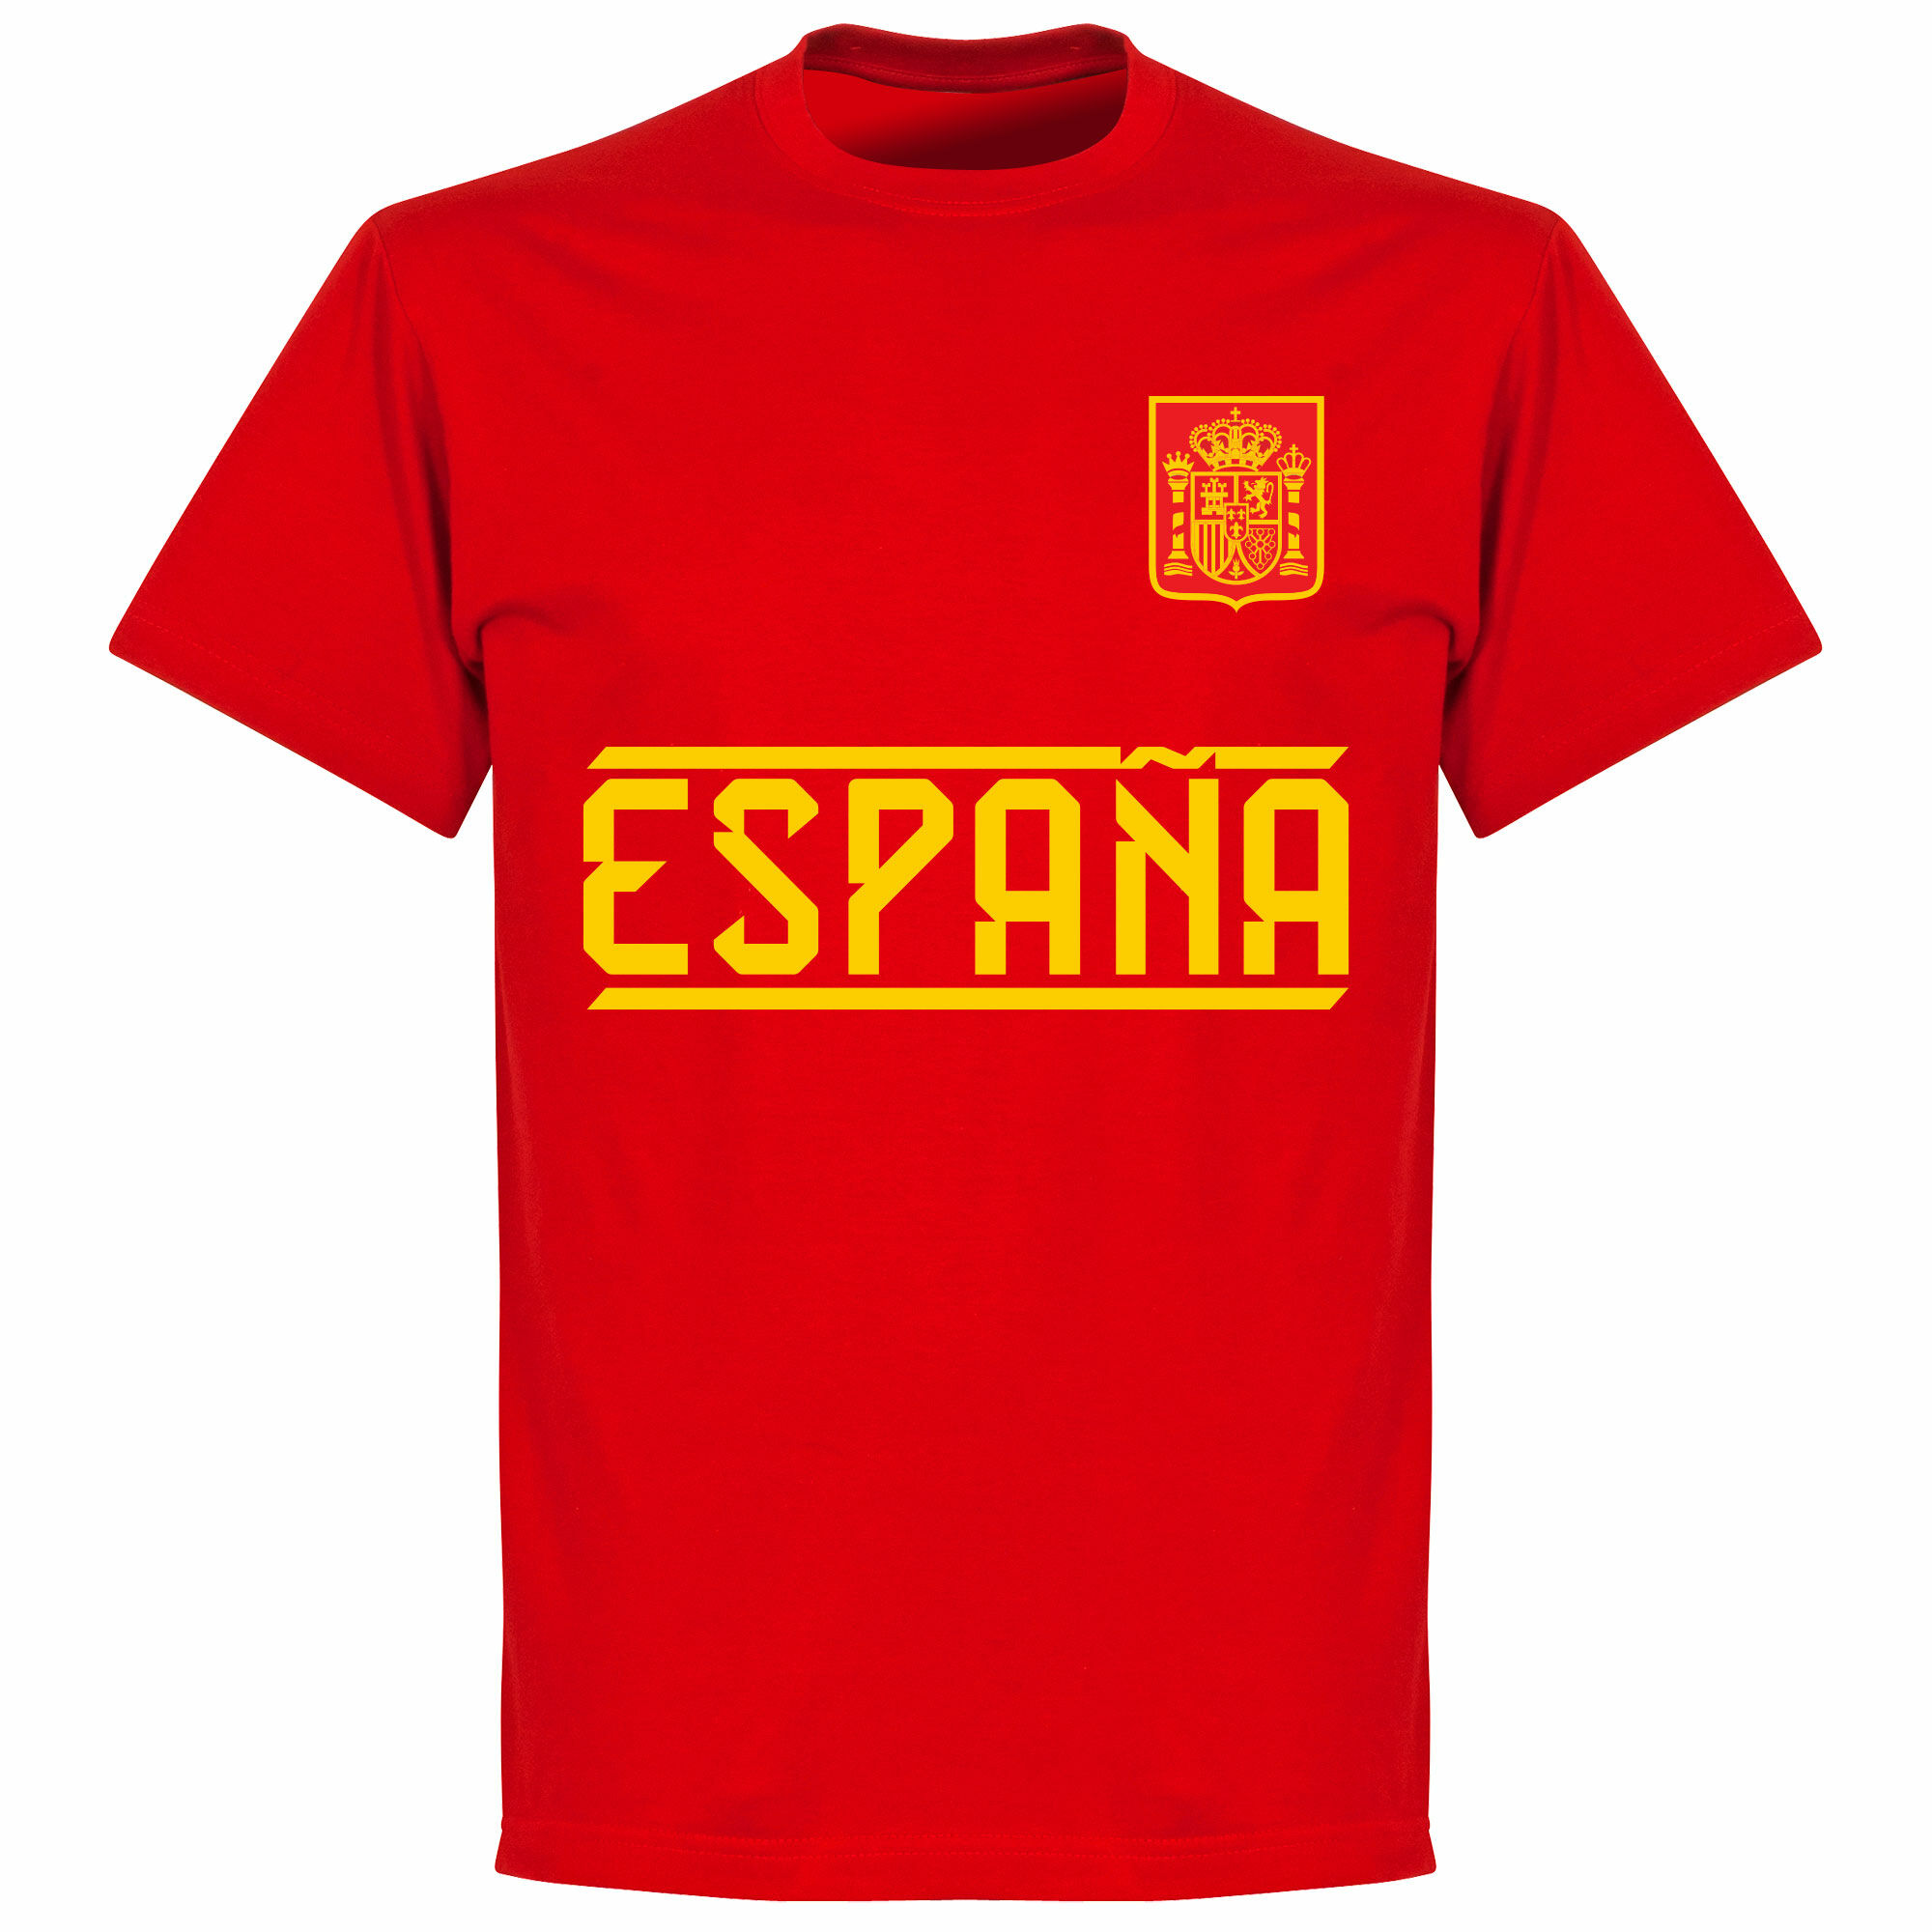 Španělsko - Tričko dětské - červené